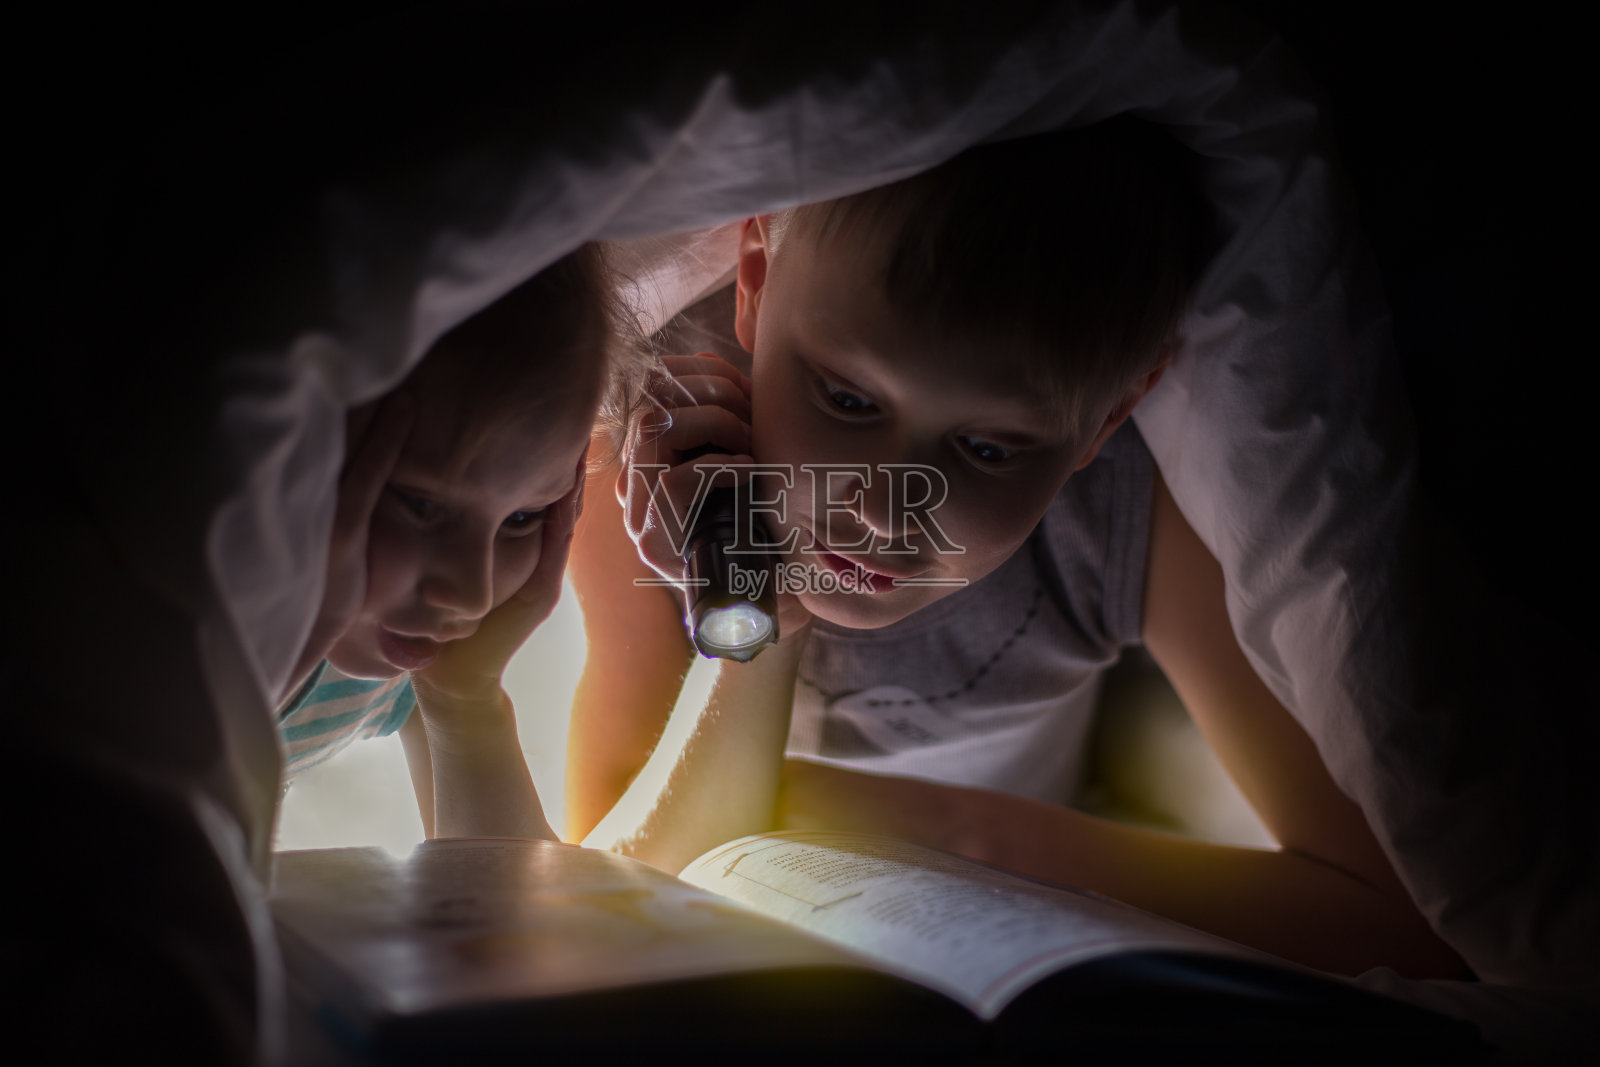 睡觉前妈妈和孩子在床上看书图片-商业图片-正版原创图片下载购买-VEER图片库